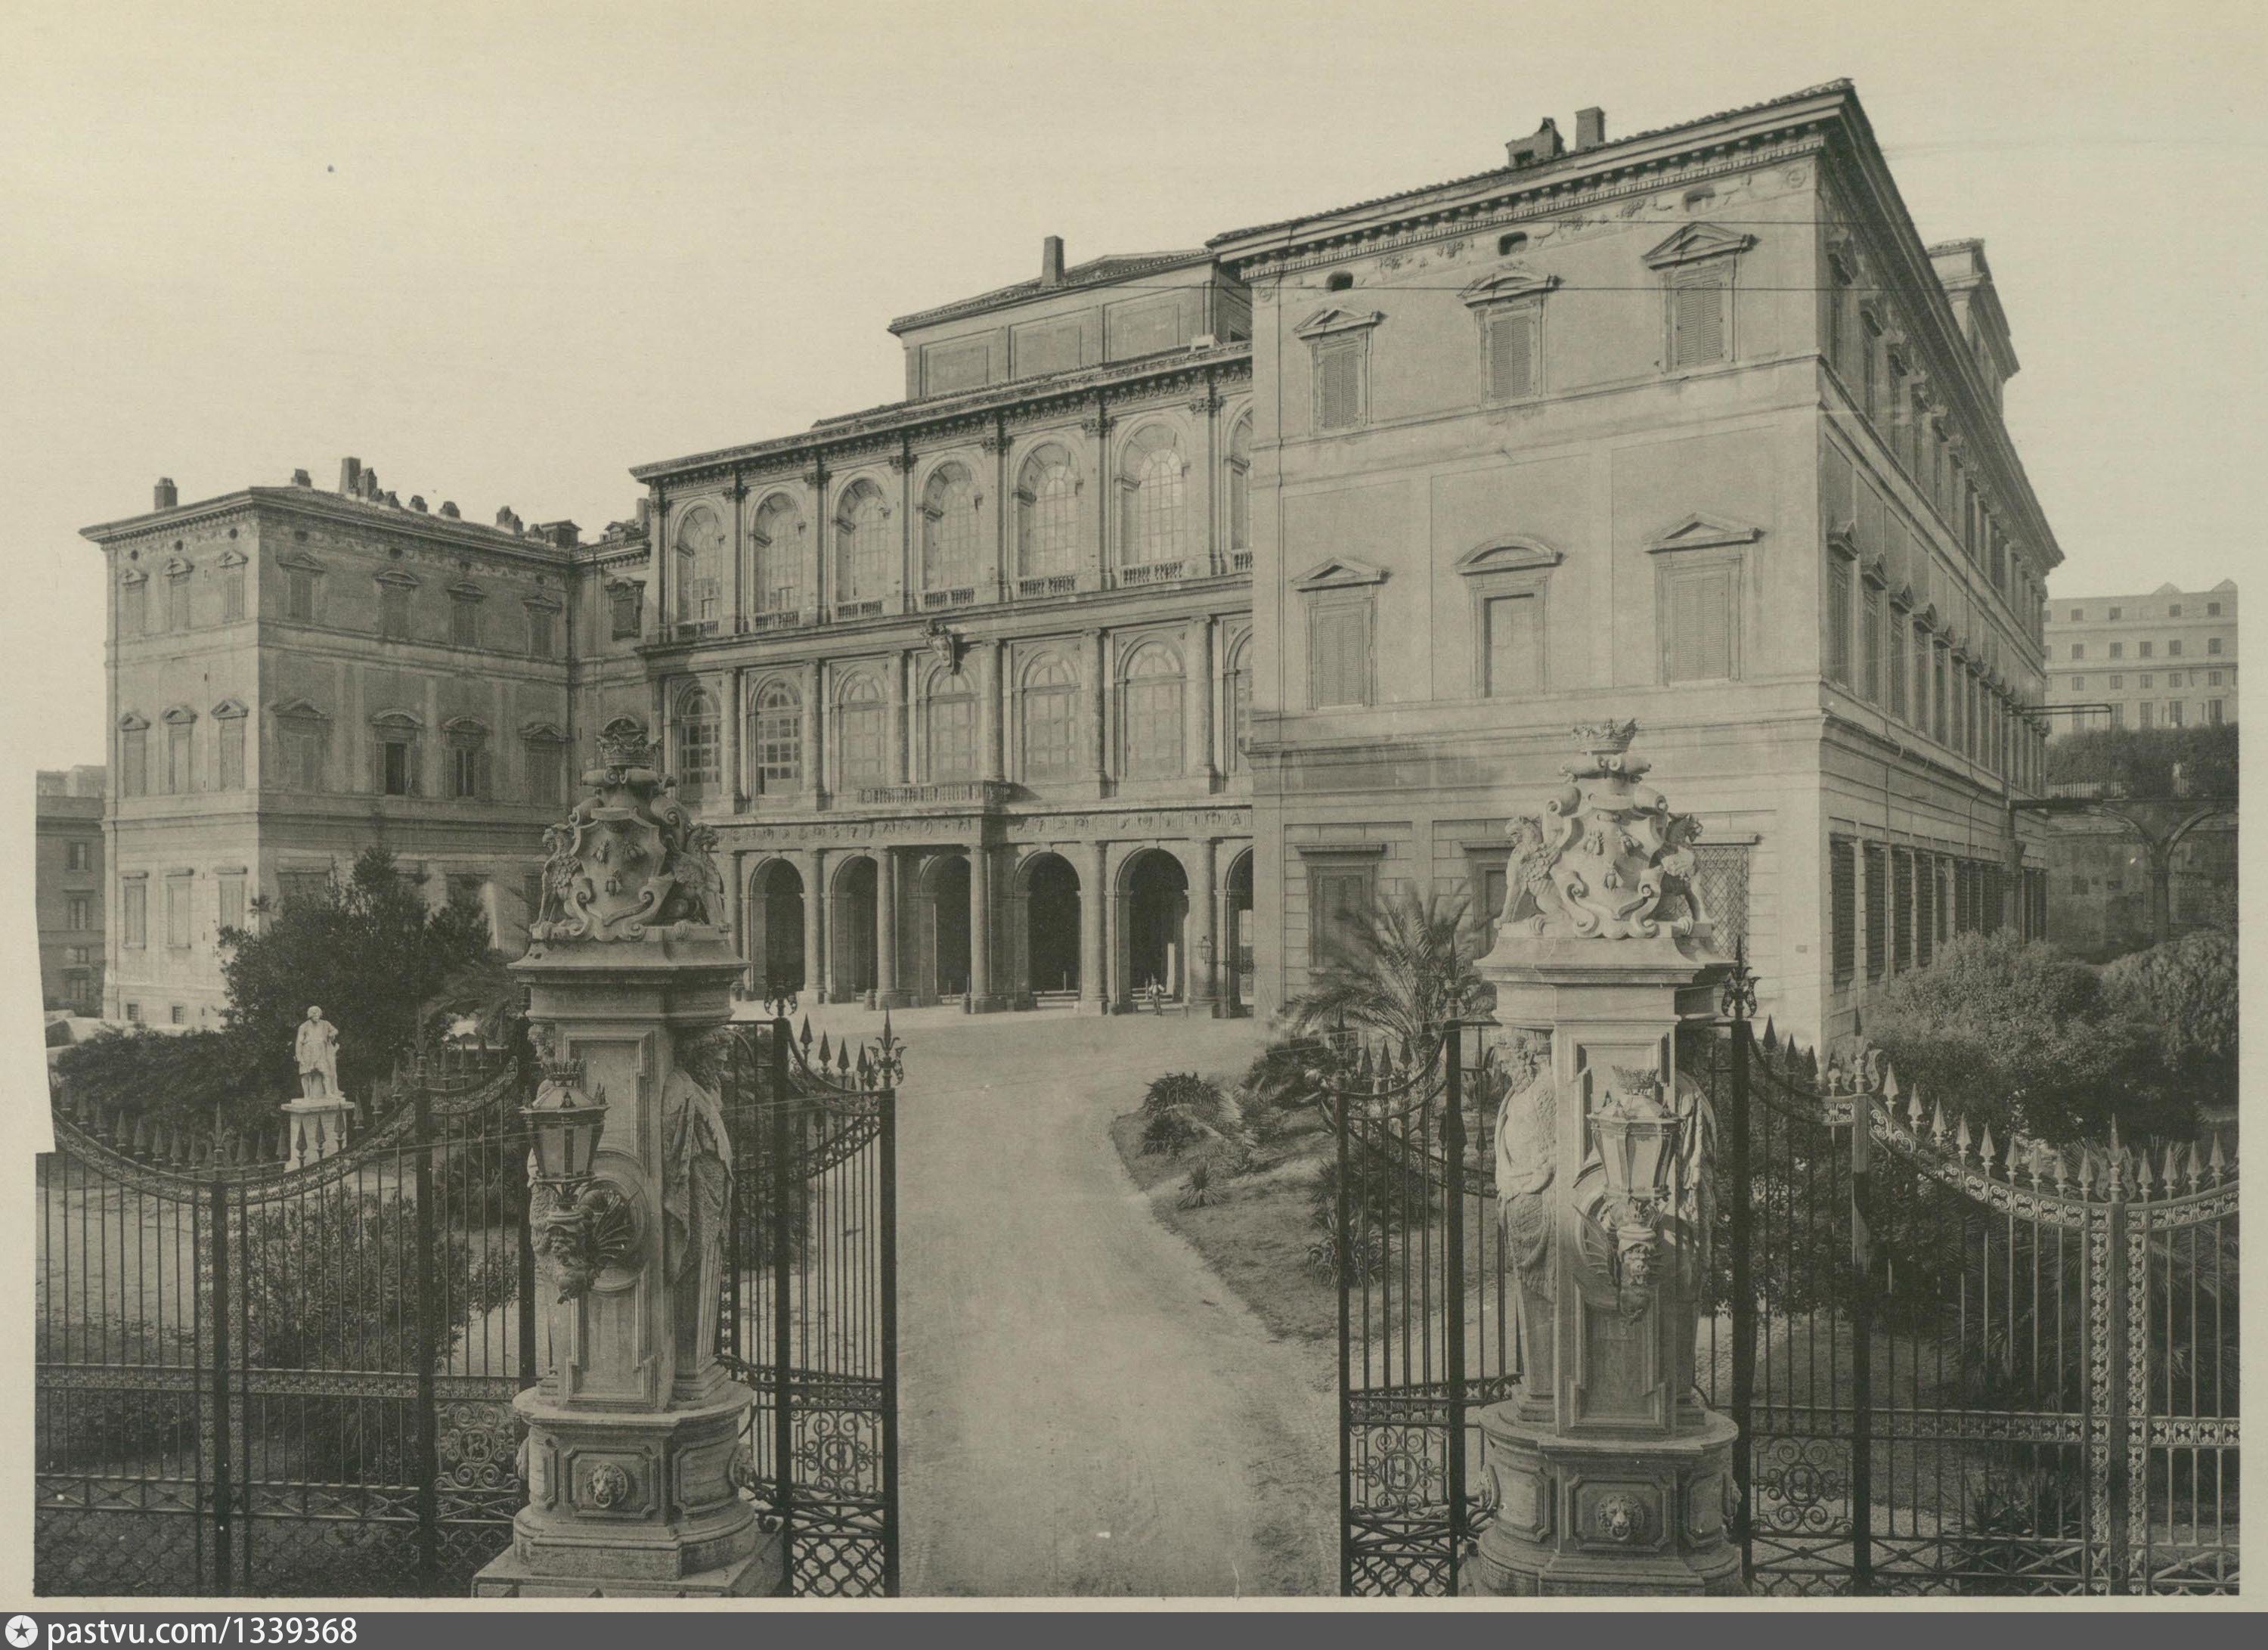 Palazzo Barberini